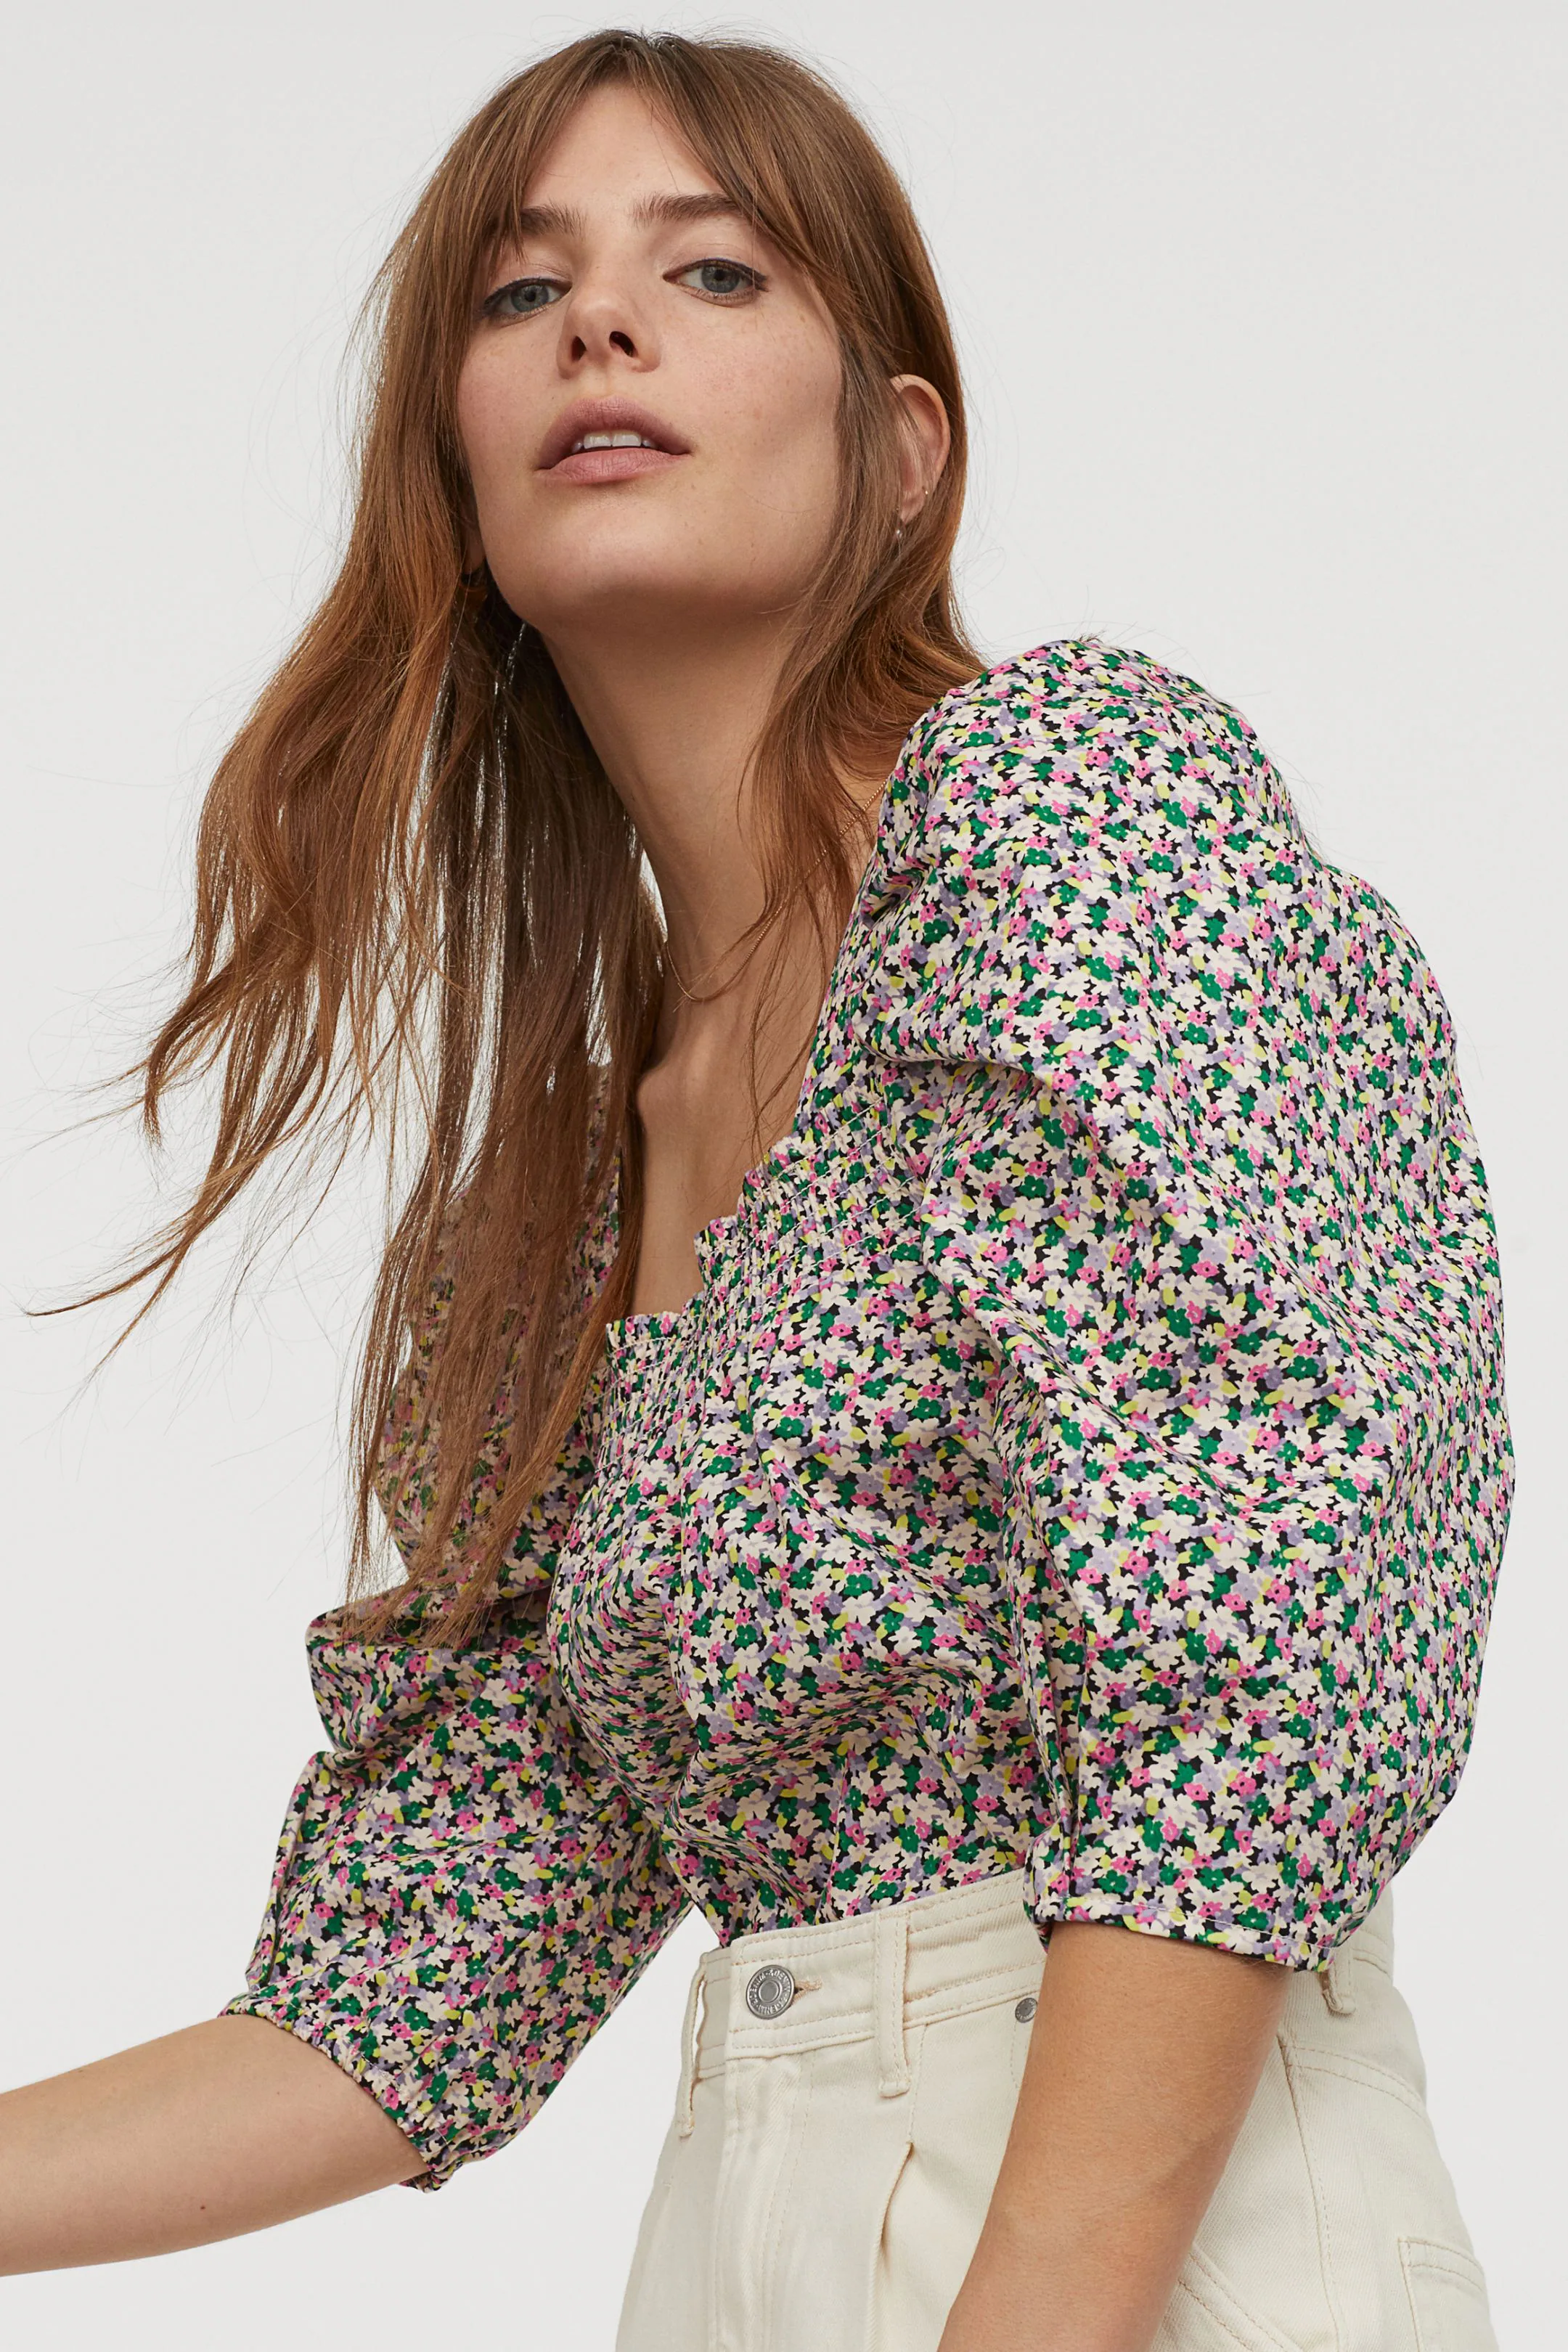 Fotos: Las blusas de nueva colección más bonitas baratas para estrenar ya mismo | Mujer Hoy